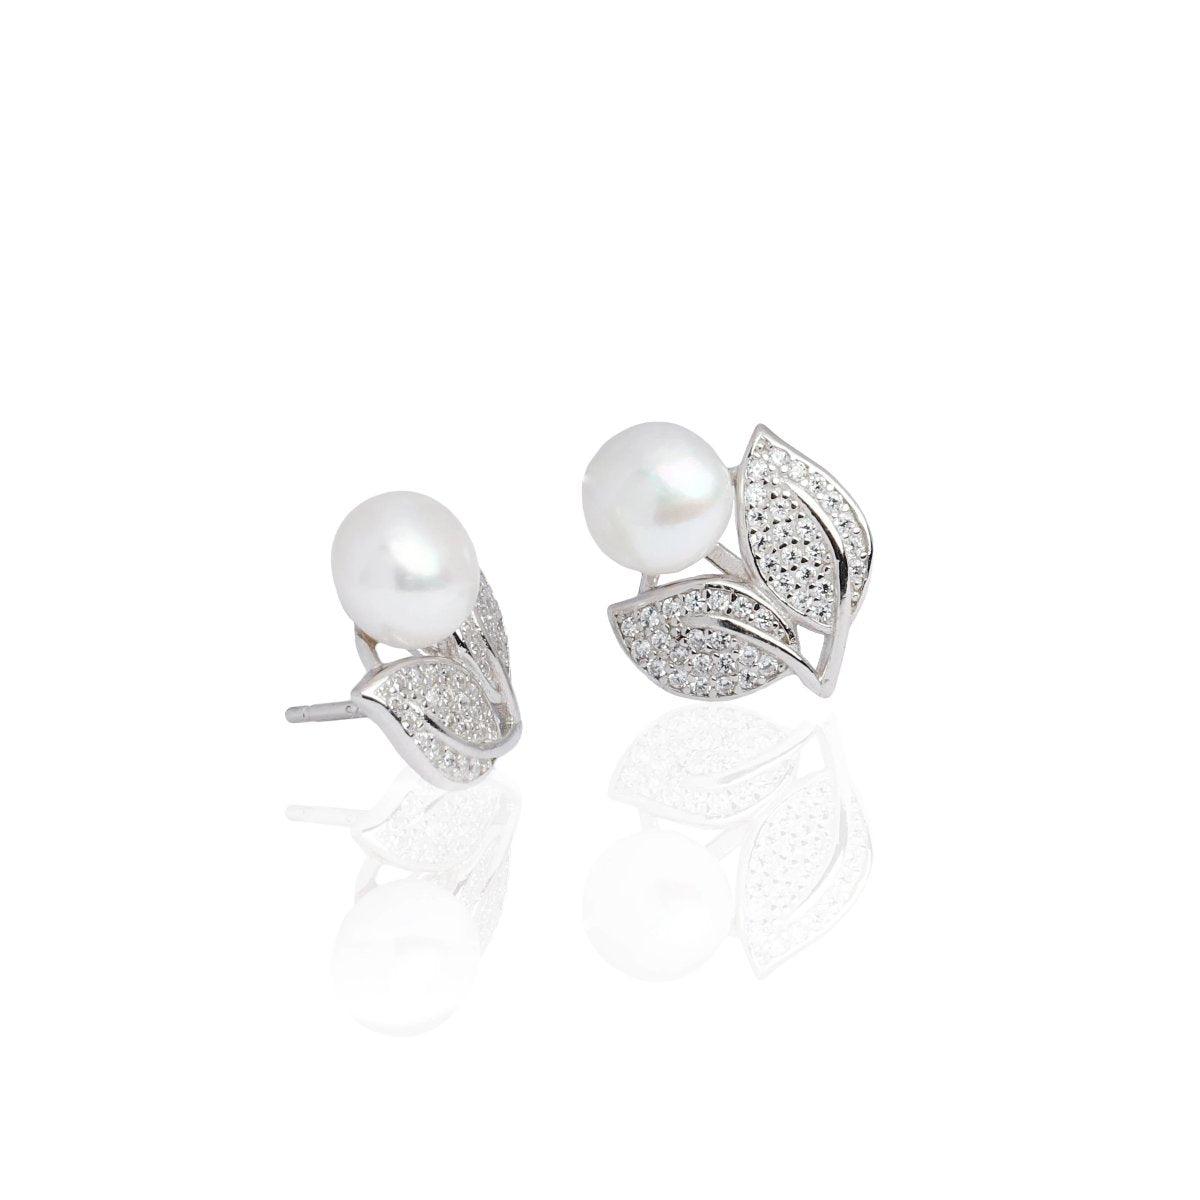 Earring E1027 - 925 Sterling Silver - Pearl